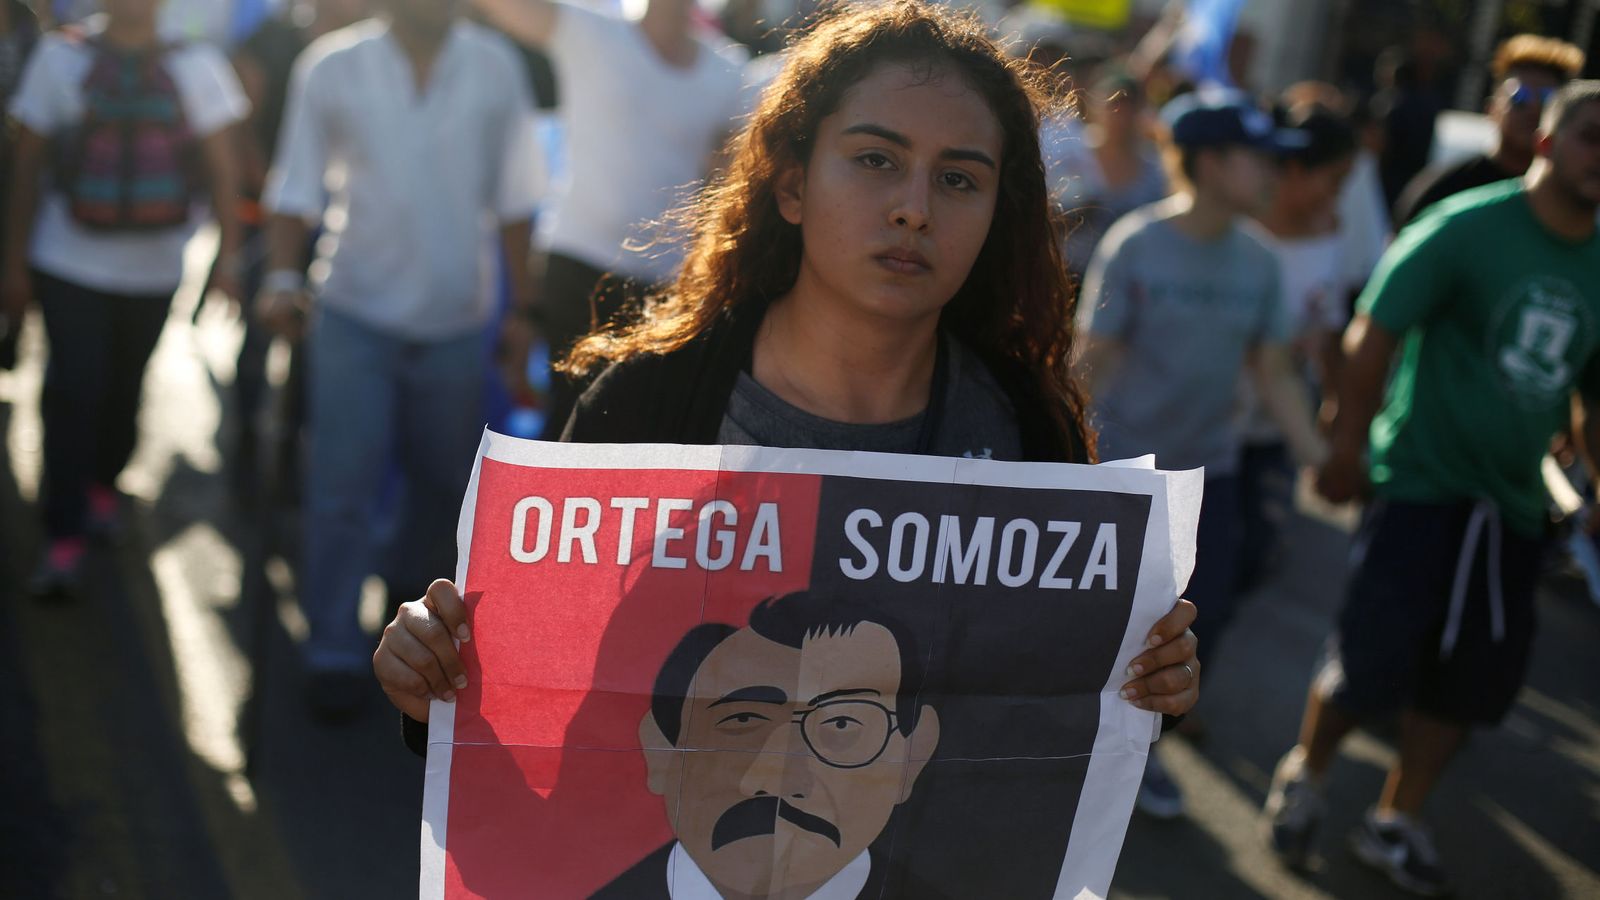 Foto: Una manifestante enarbola un cartel que dice: "Ortega, Somoza, son la misma cosa", durante una marcha en Managua el 23 de abril de 2018. (Reuters)